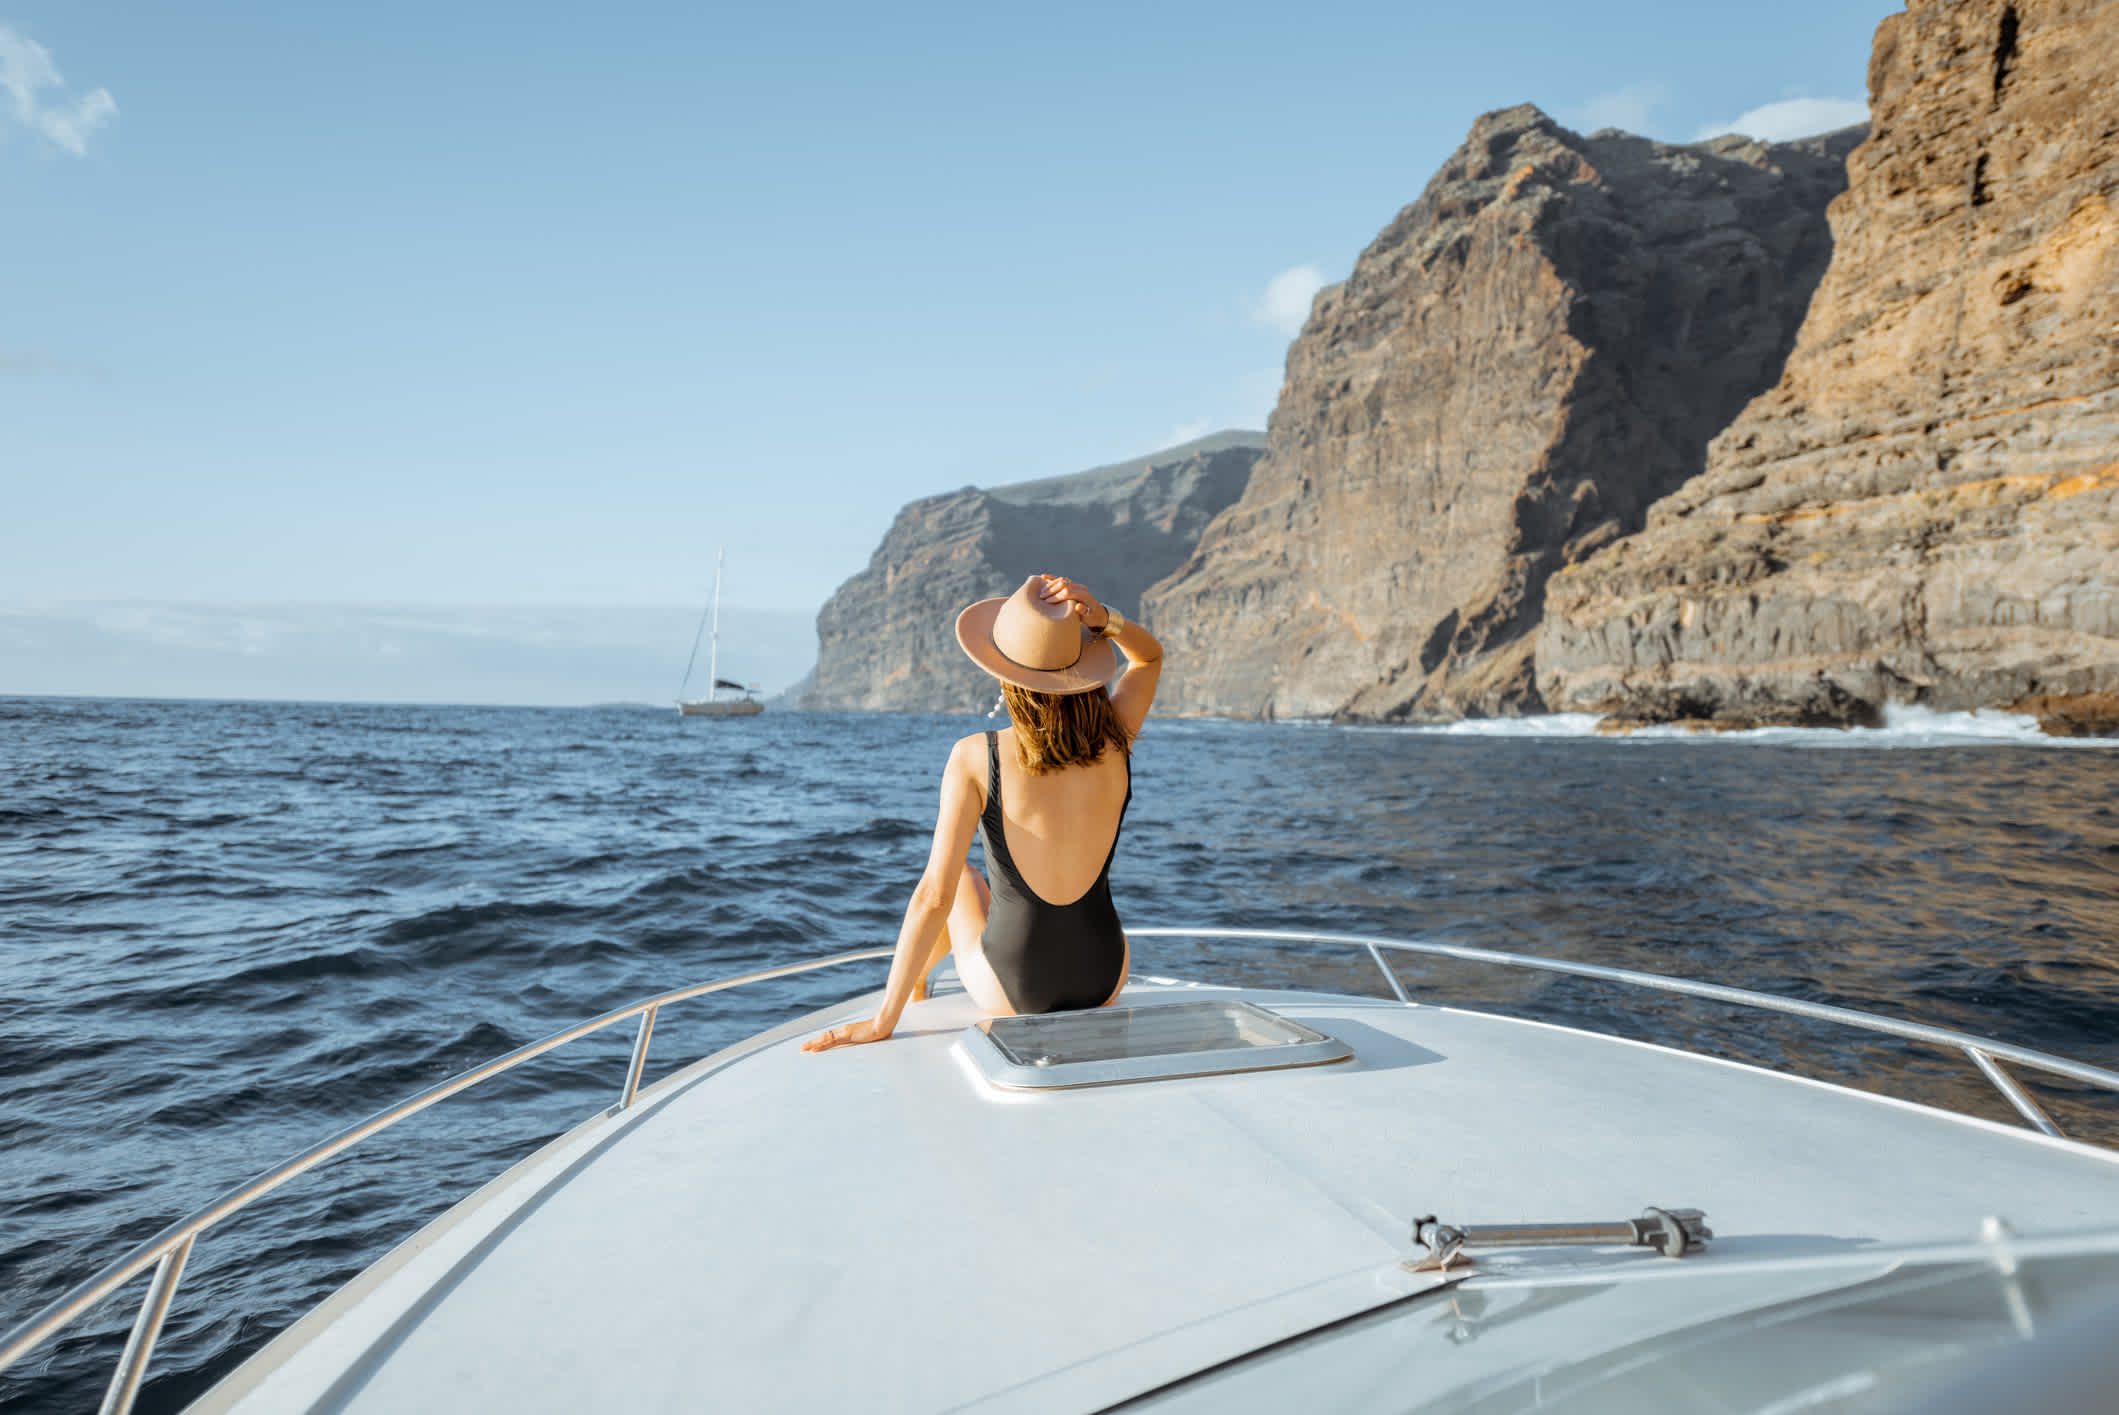 Femme sur un voilier près de Los Gigantes, Tenerife, Îles Canaries, Espagne.

